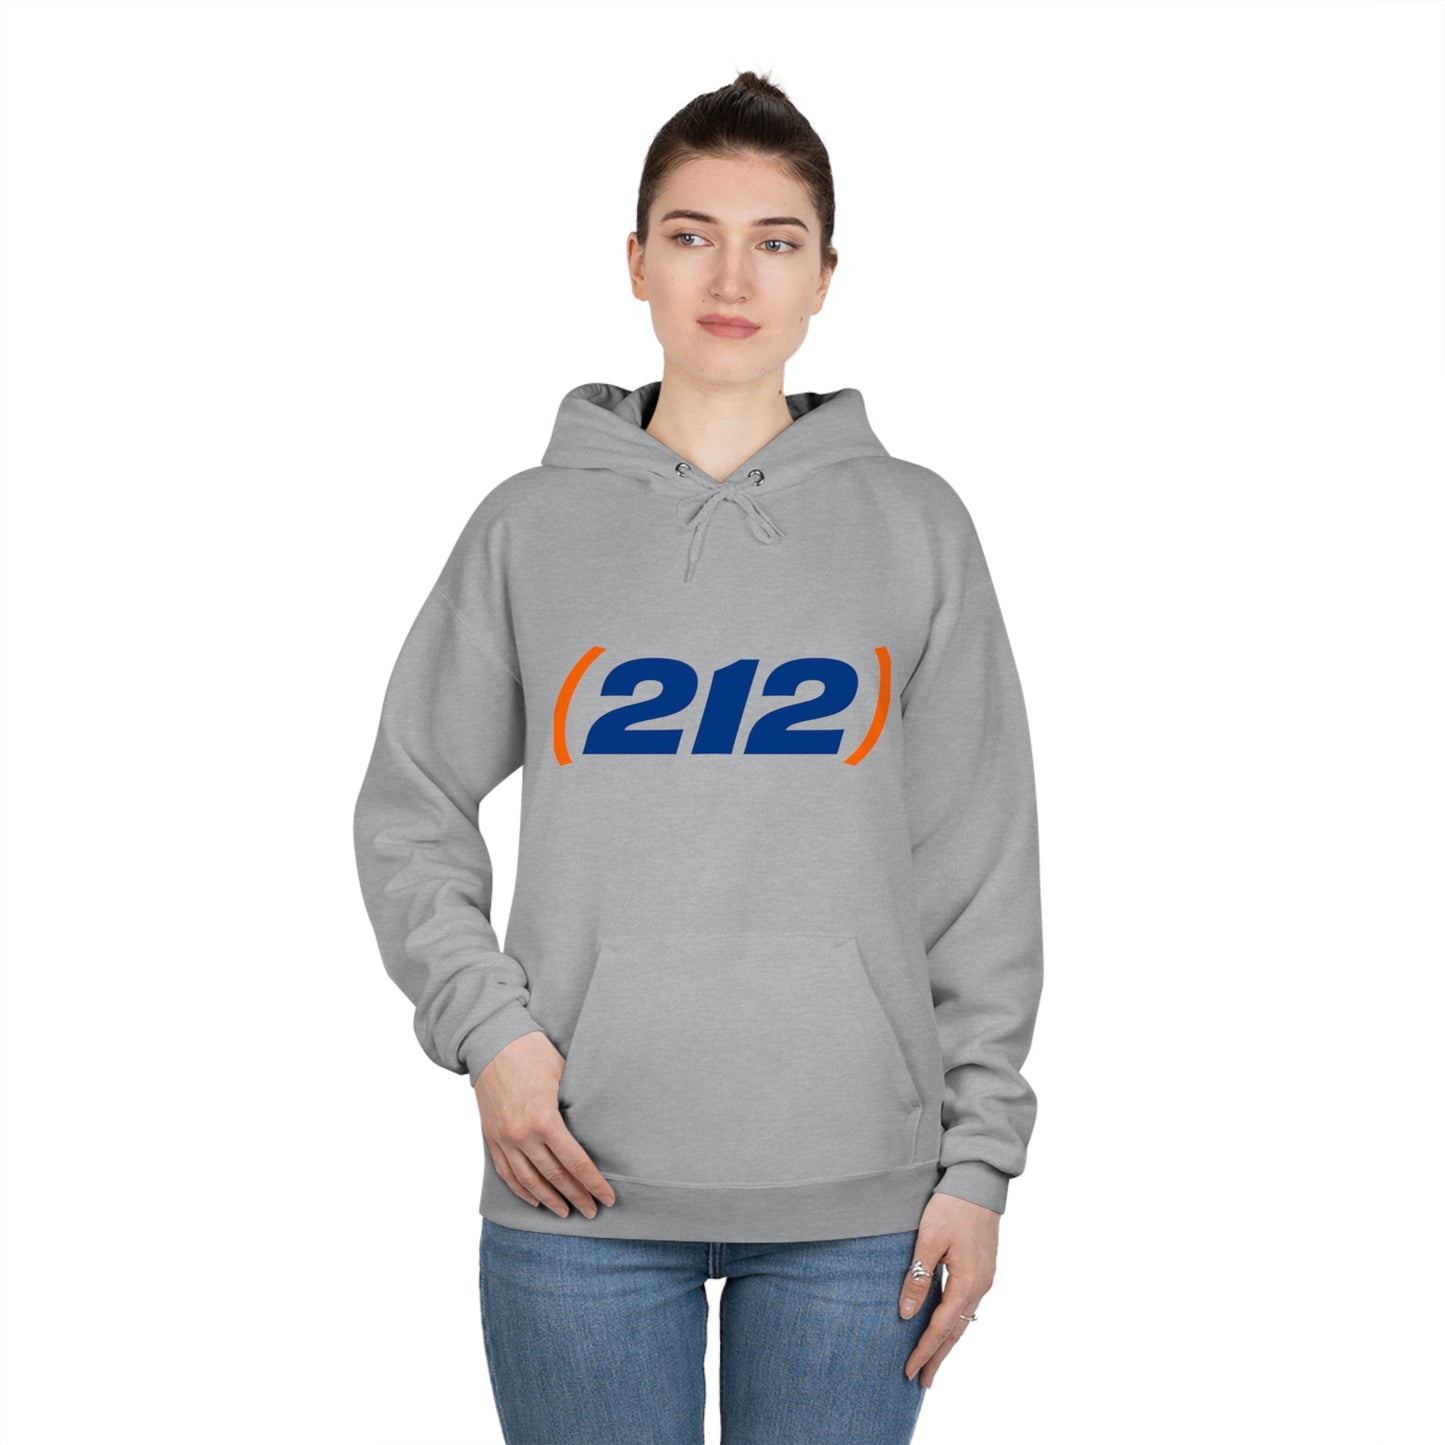 (212) Hooded Sweatshirt